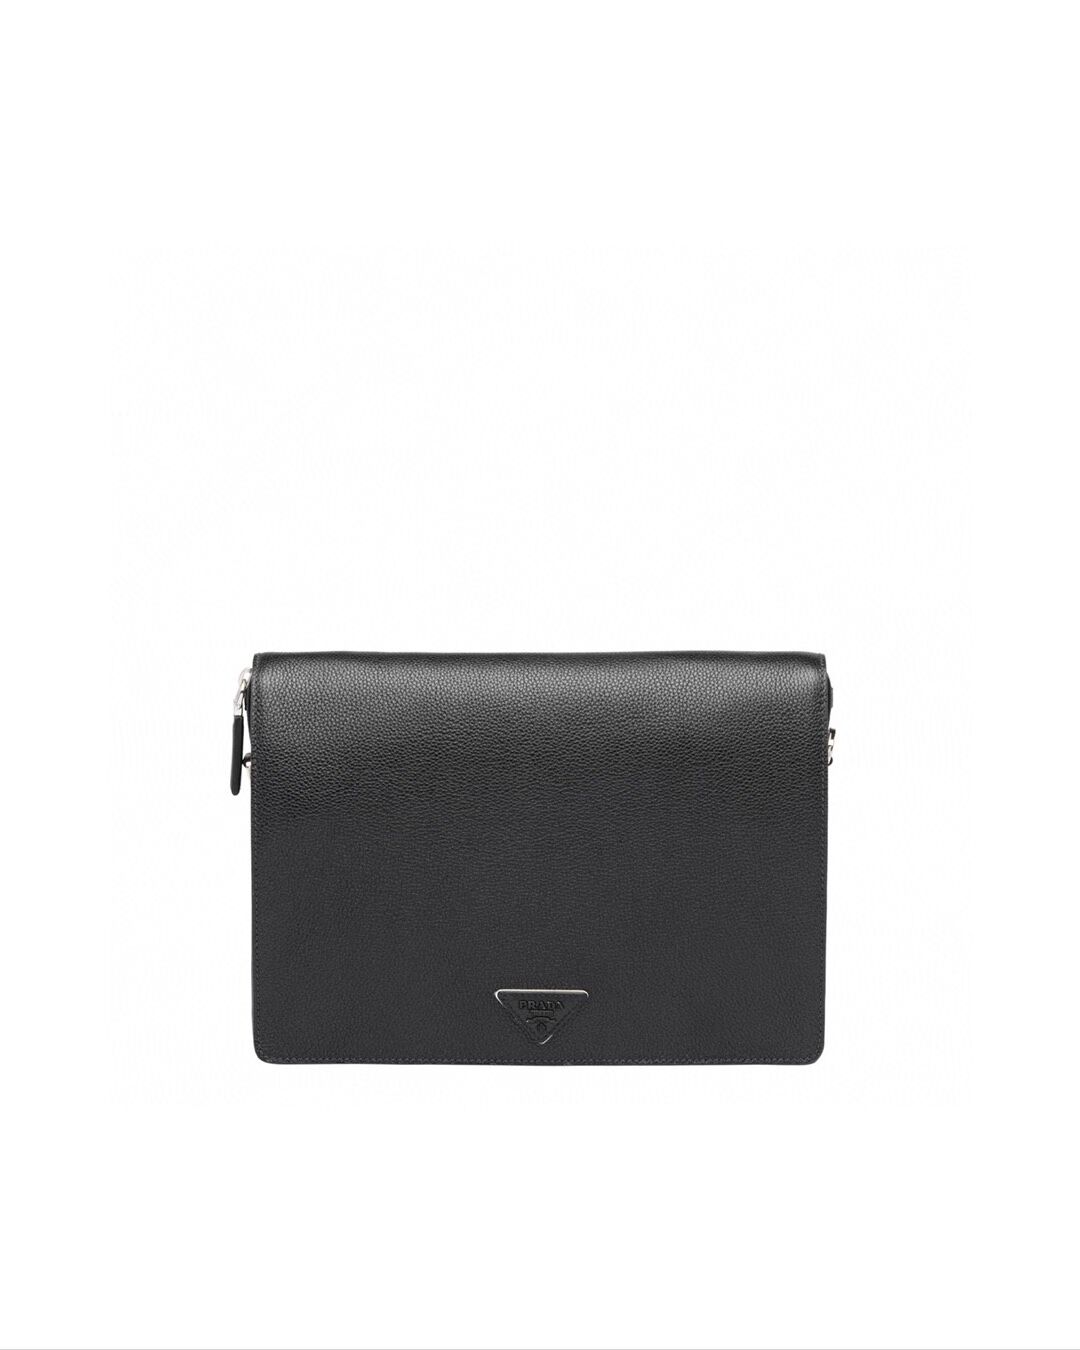 Prada leather shoulder bag 2VD012 black